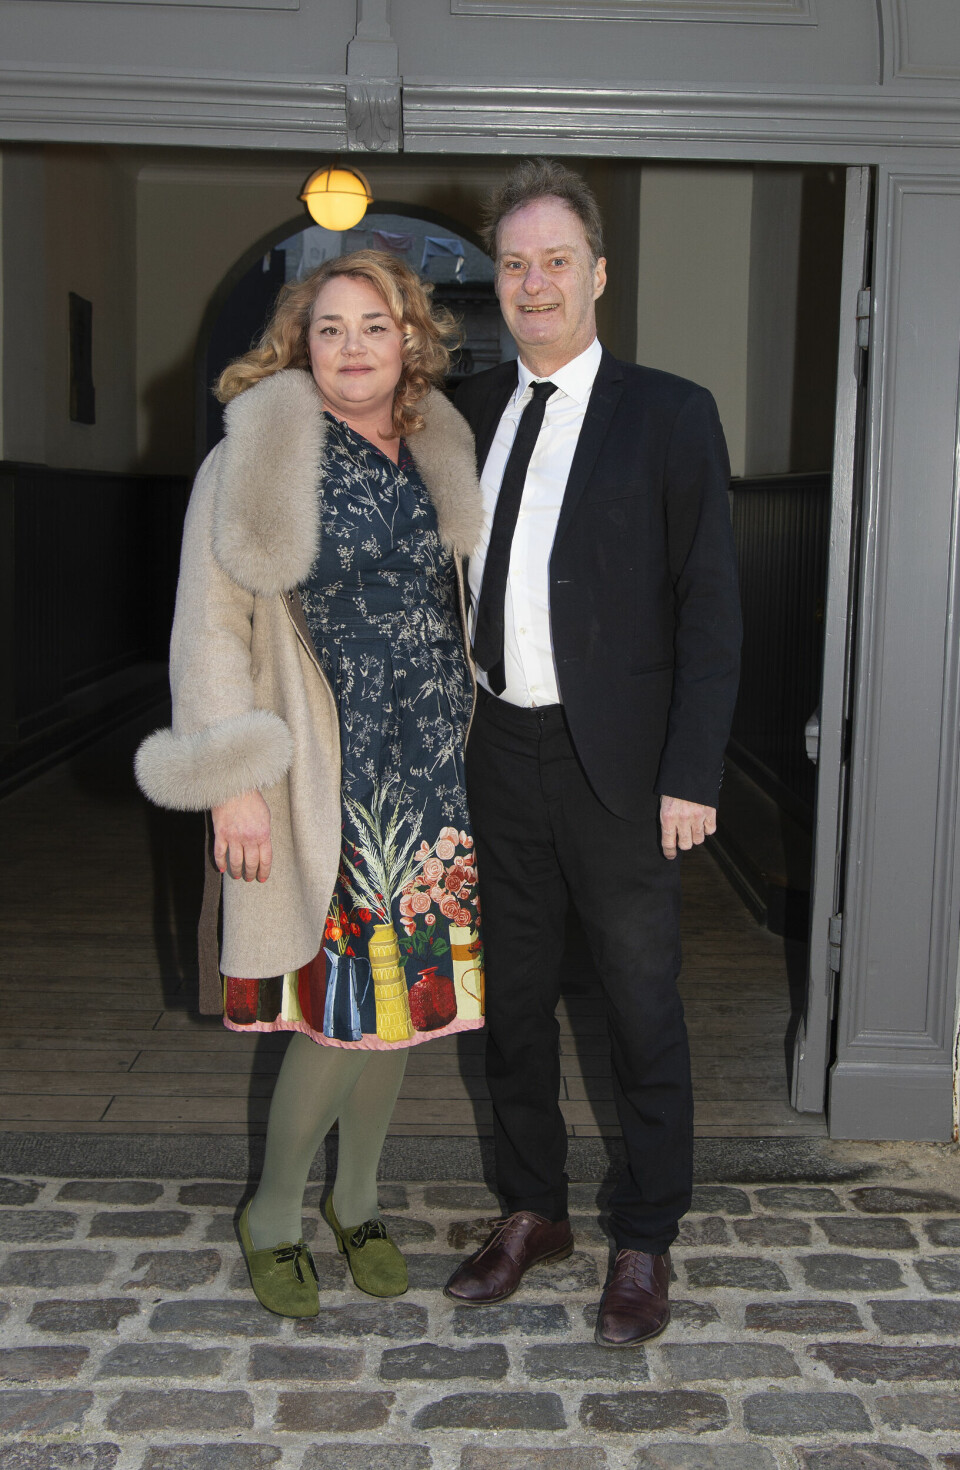 Knud Romer Jørgensen,
62, med kæresten Laura
Kirkegaard, 47, der er
direktør i Landsorganisation af Kvindekrisecentre.